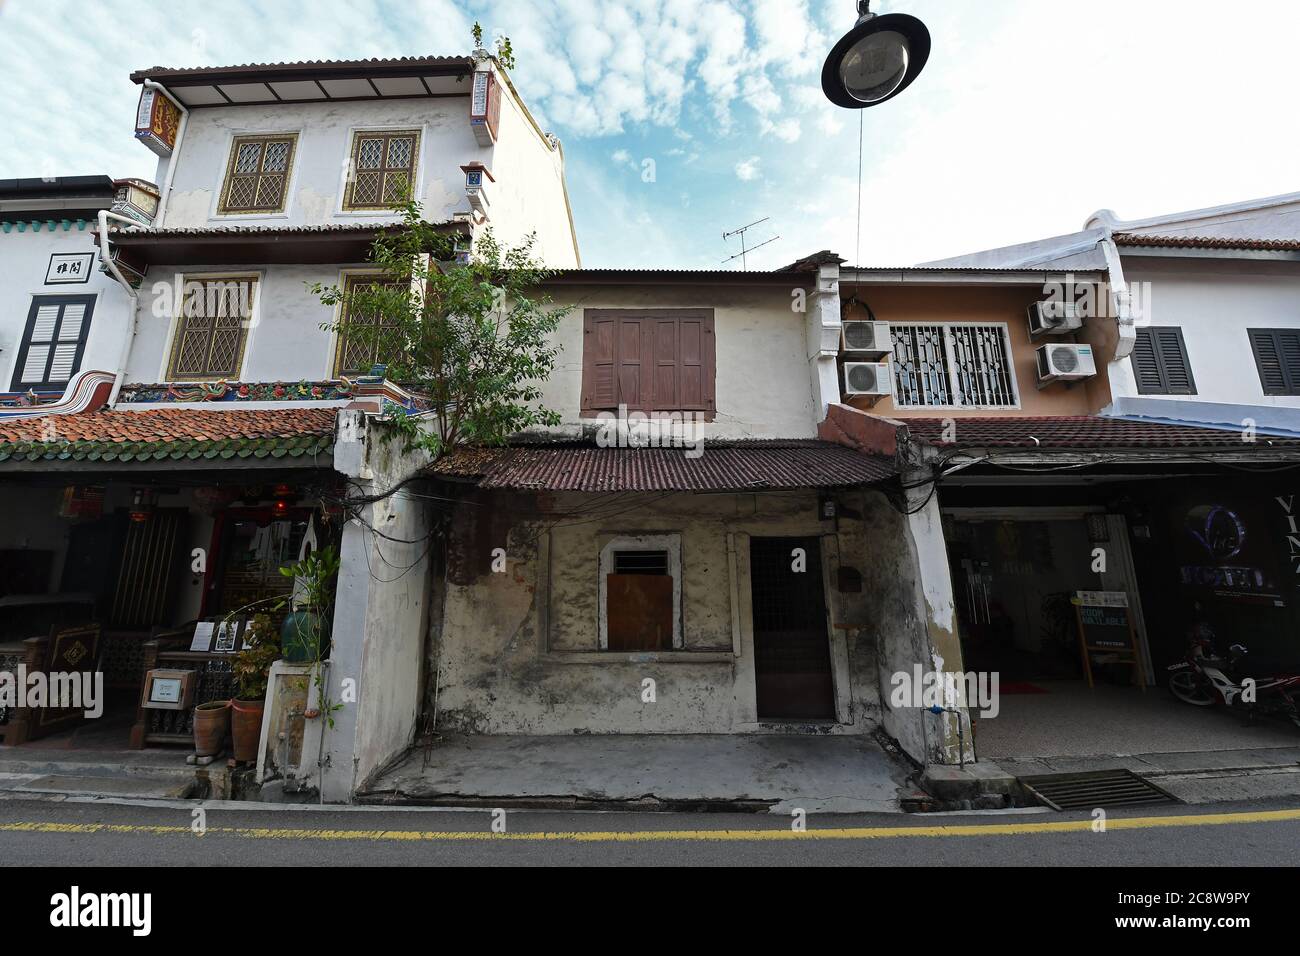 Old period Sino-Portuguese architecture in Malacca Malaysia Stock Photo